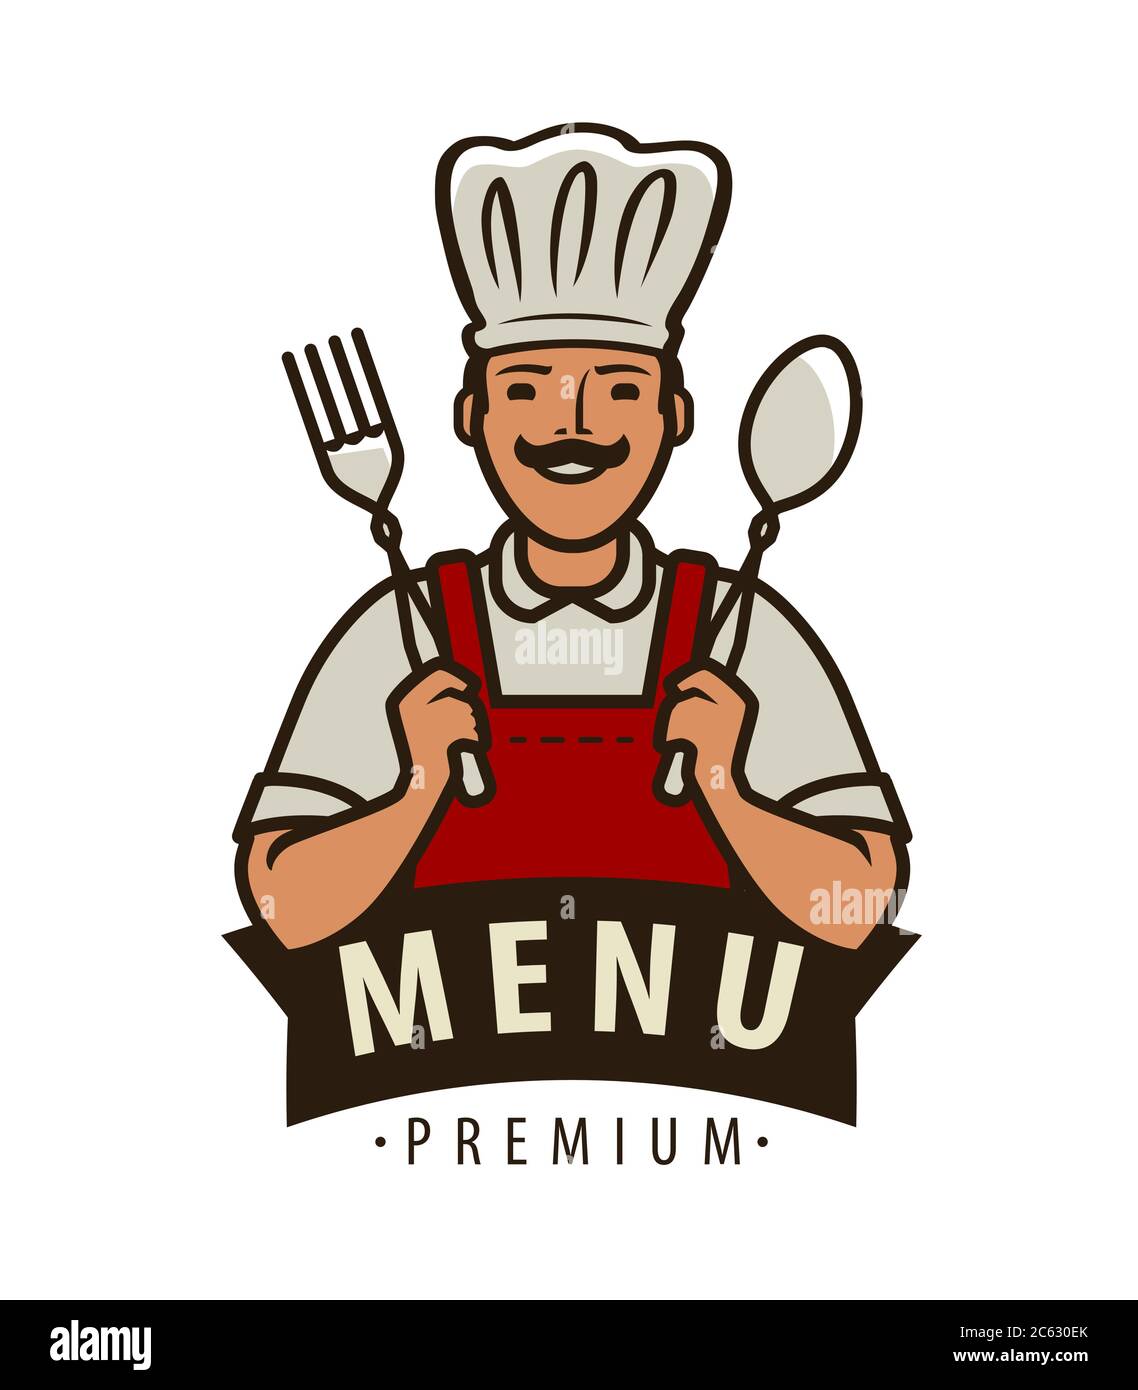 Logo Ou Etiquette Du Chef Design Du Menu Pour Le Cafe Et Le Restaurant 2c630ek 